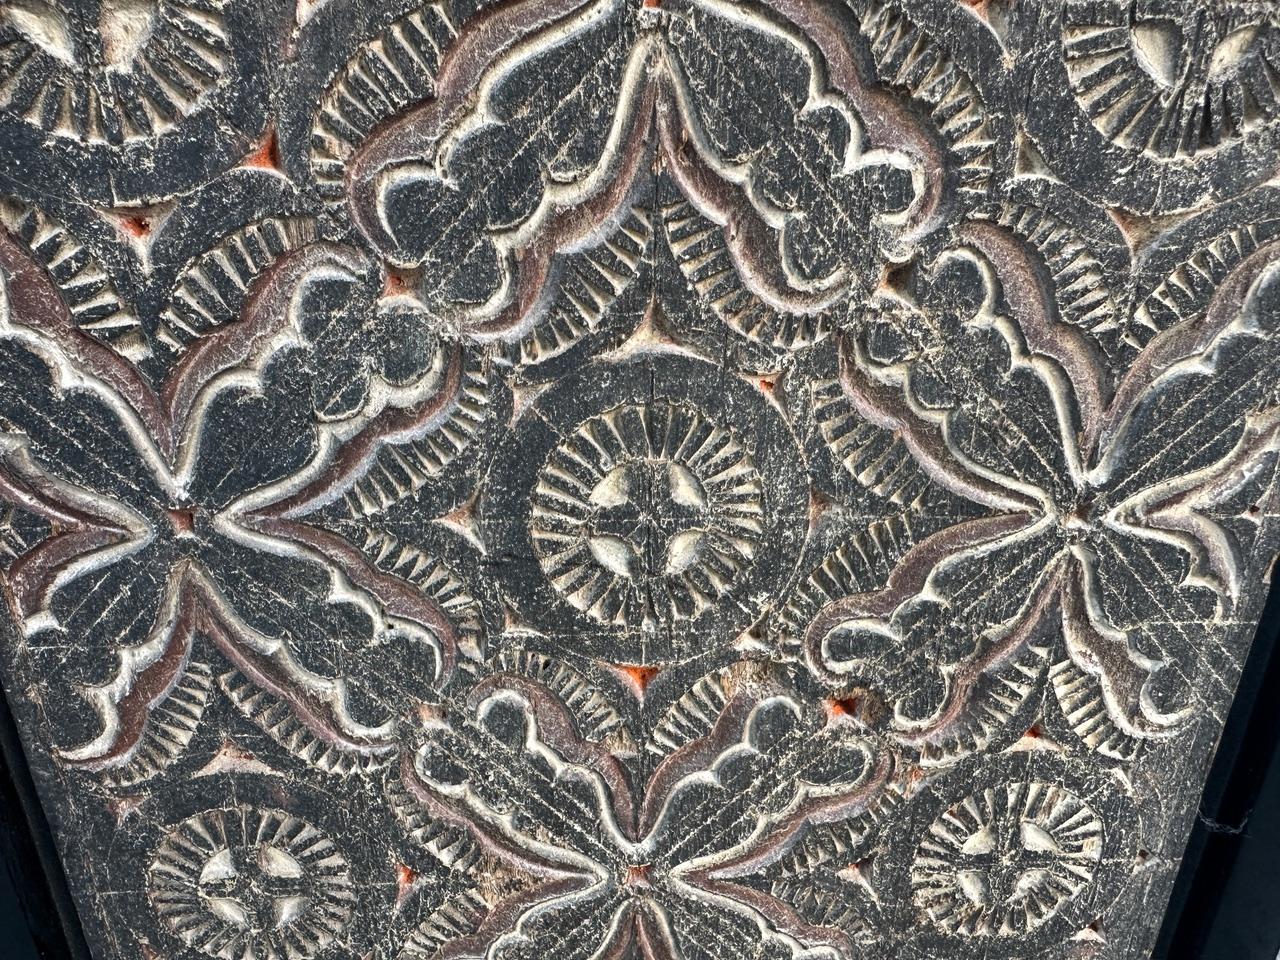 Antike handgeschnitzte Tafel aus Toraja. Gerahmt in einer minimalistischen Schattenbox aus schwarzem Teakholz. Diese Schnitzerei symbolisiert Frieden und Glück. Um 1950.

Diese antike Schnitzerei wurde im Geiste von Wabi-Sabi handgeschnitzt, einer